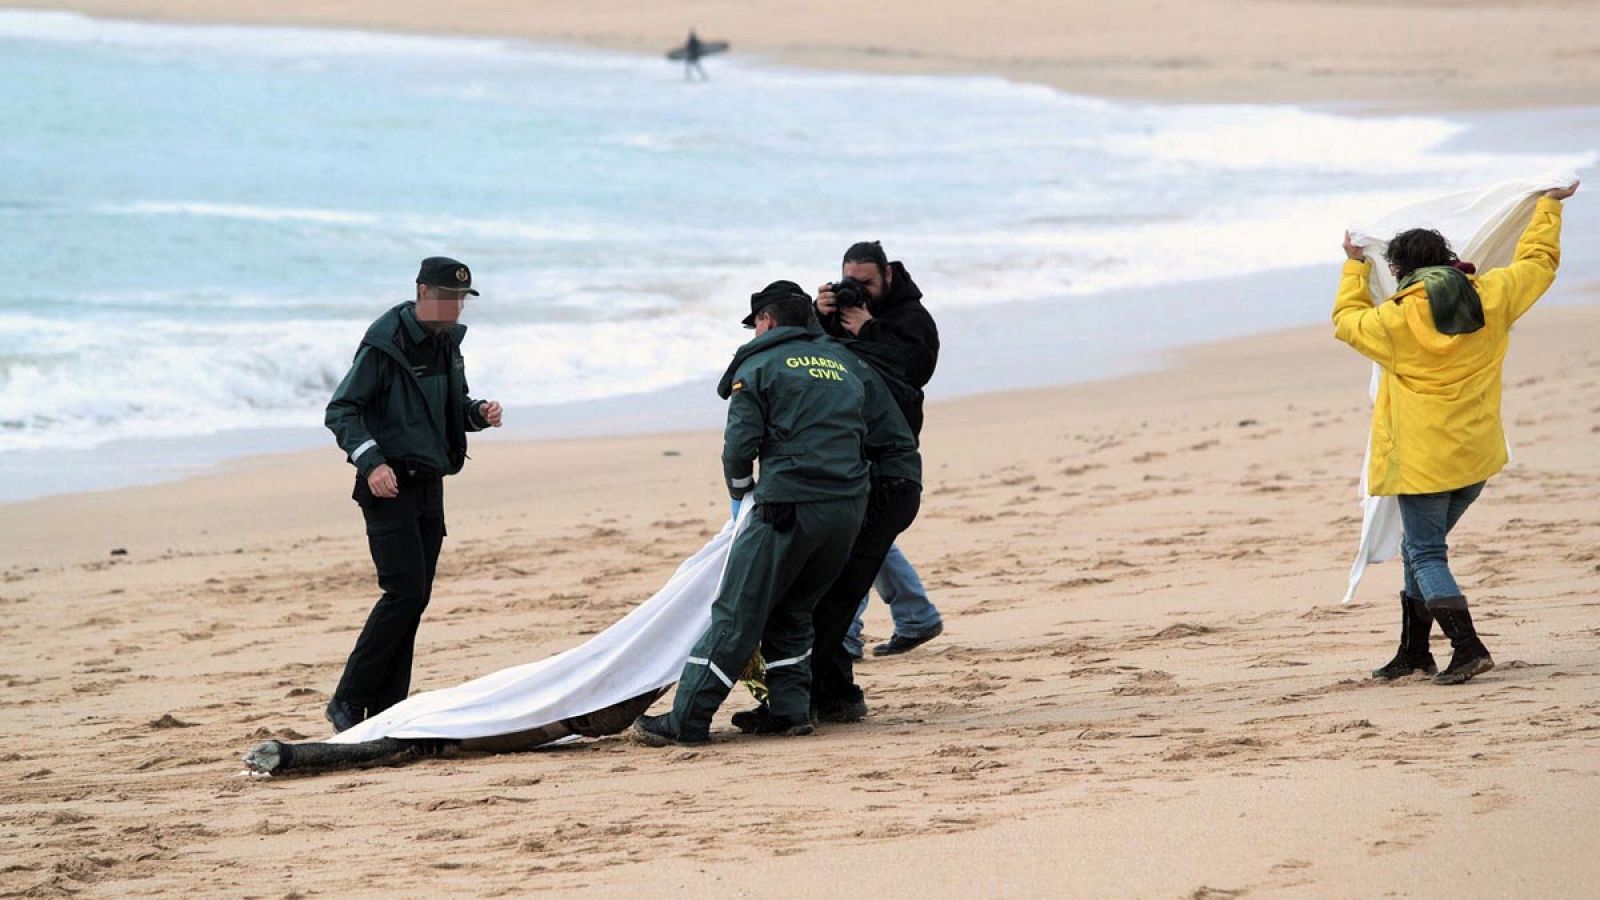 La Guardia Civil encuentra otros 5 cuerpos sin vida, lo que eleva a 18 la cifra de muertos por el naufragio